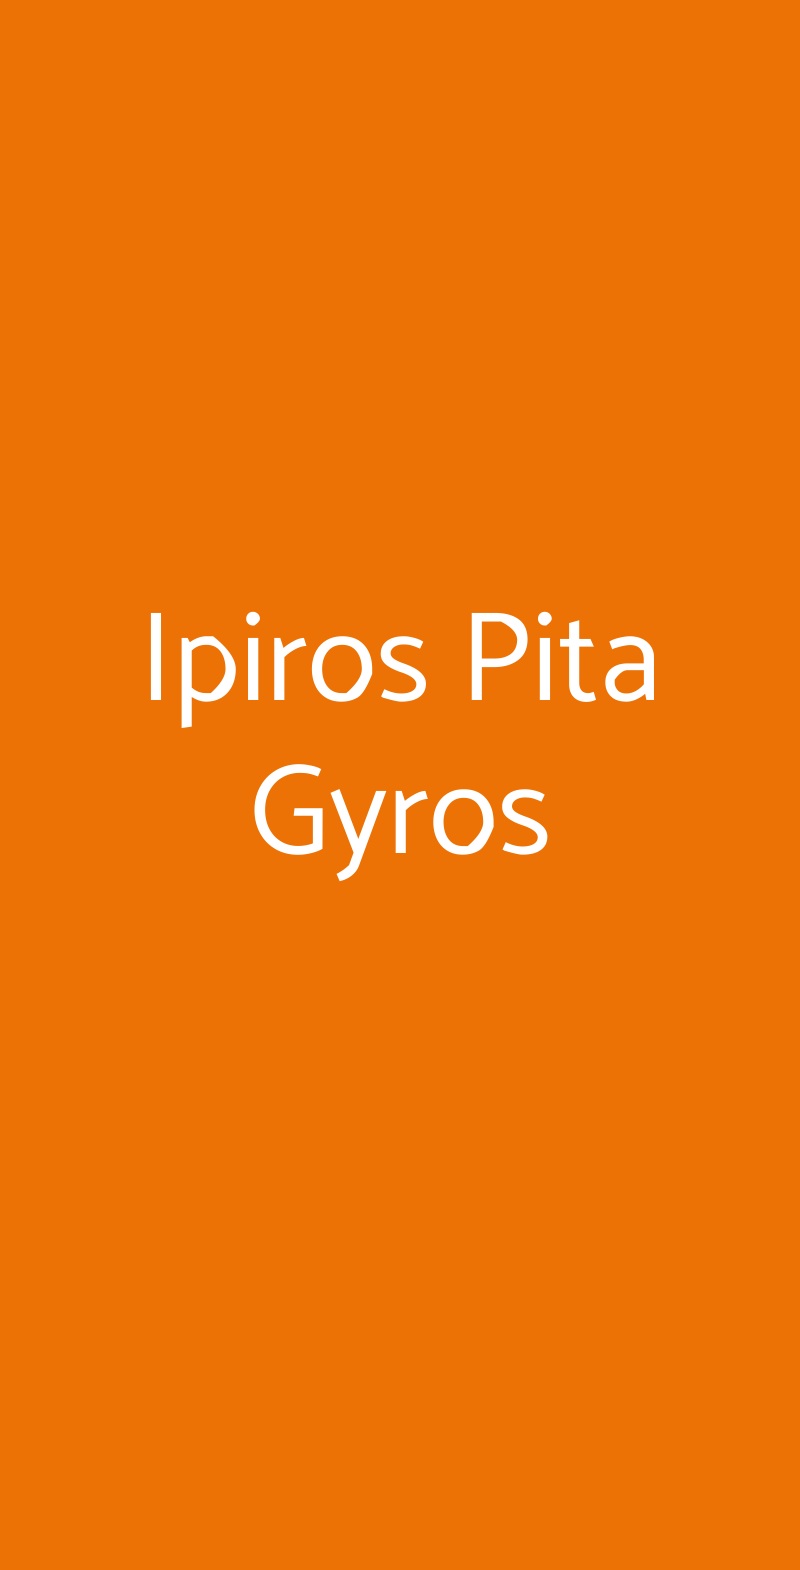 Ipiros Pita Gyros Pavia menù 1 pagina